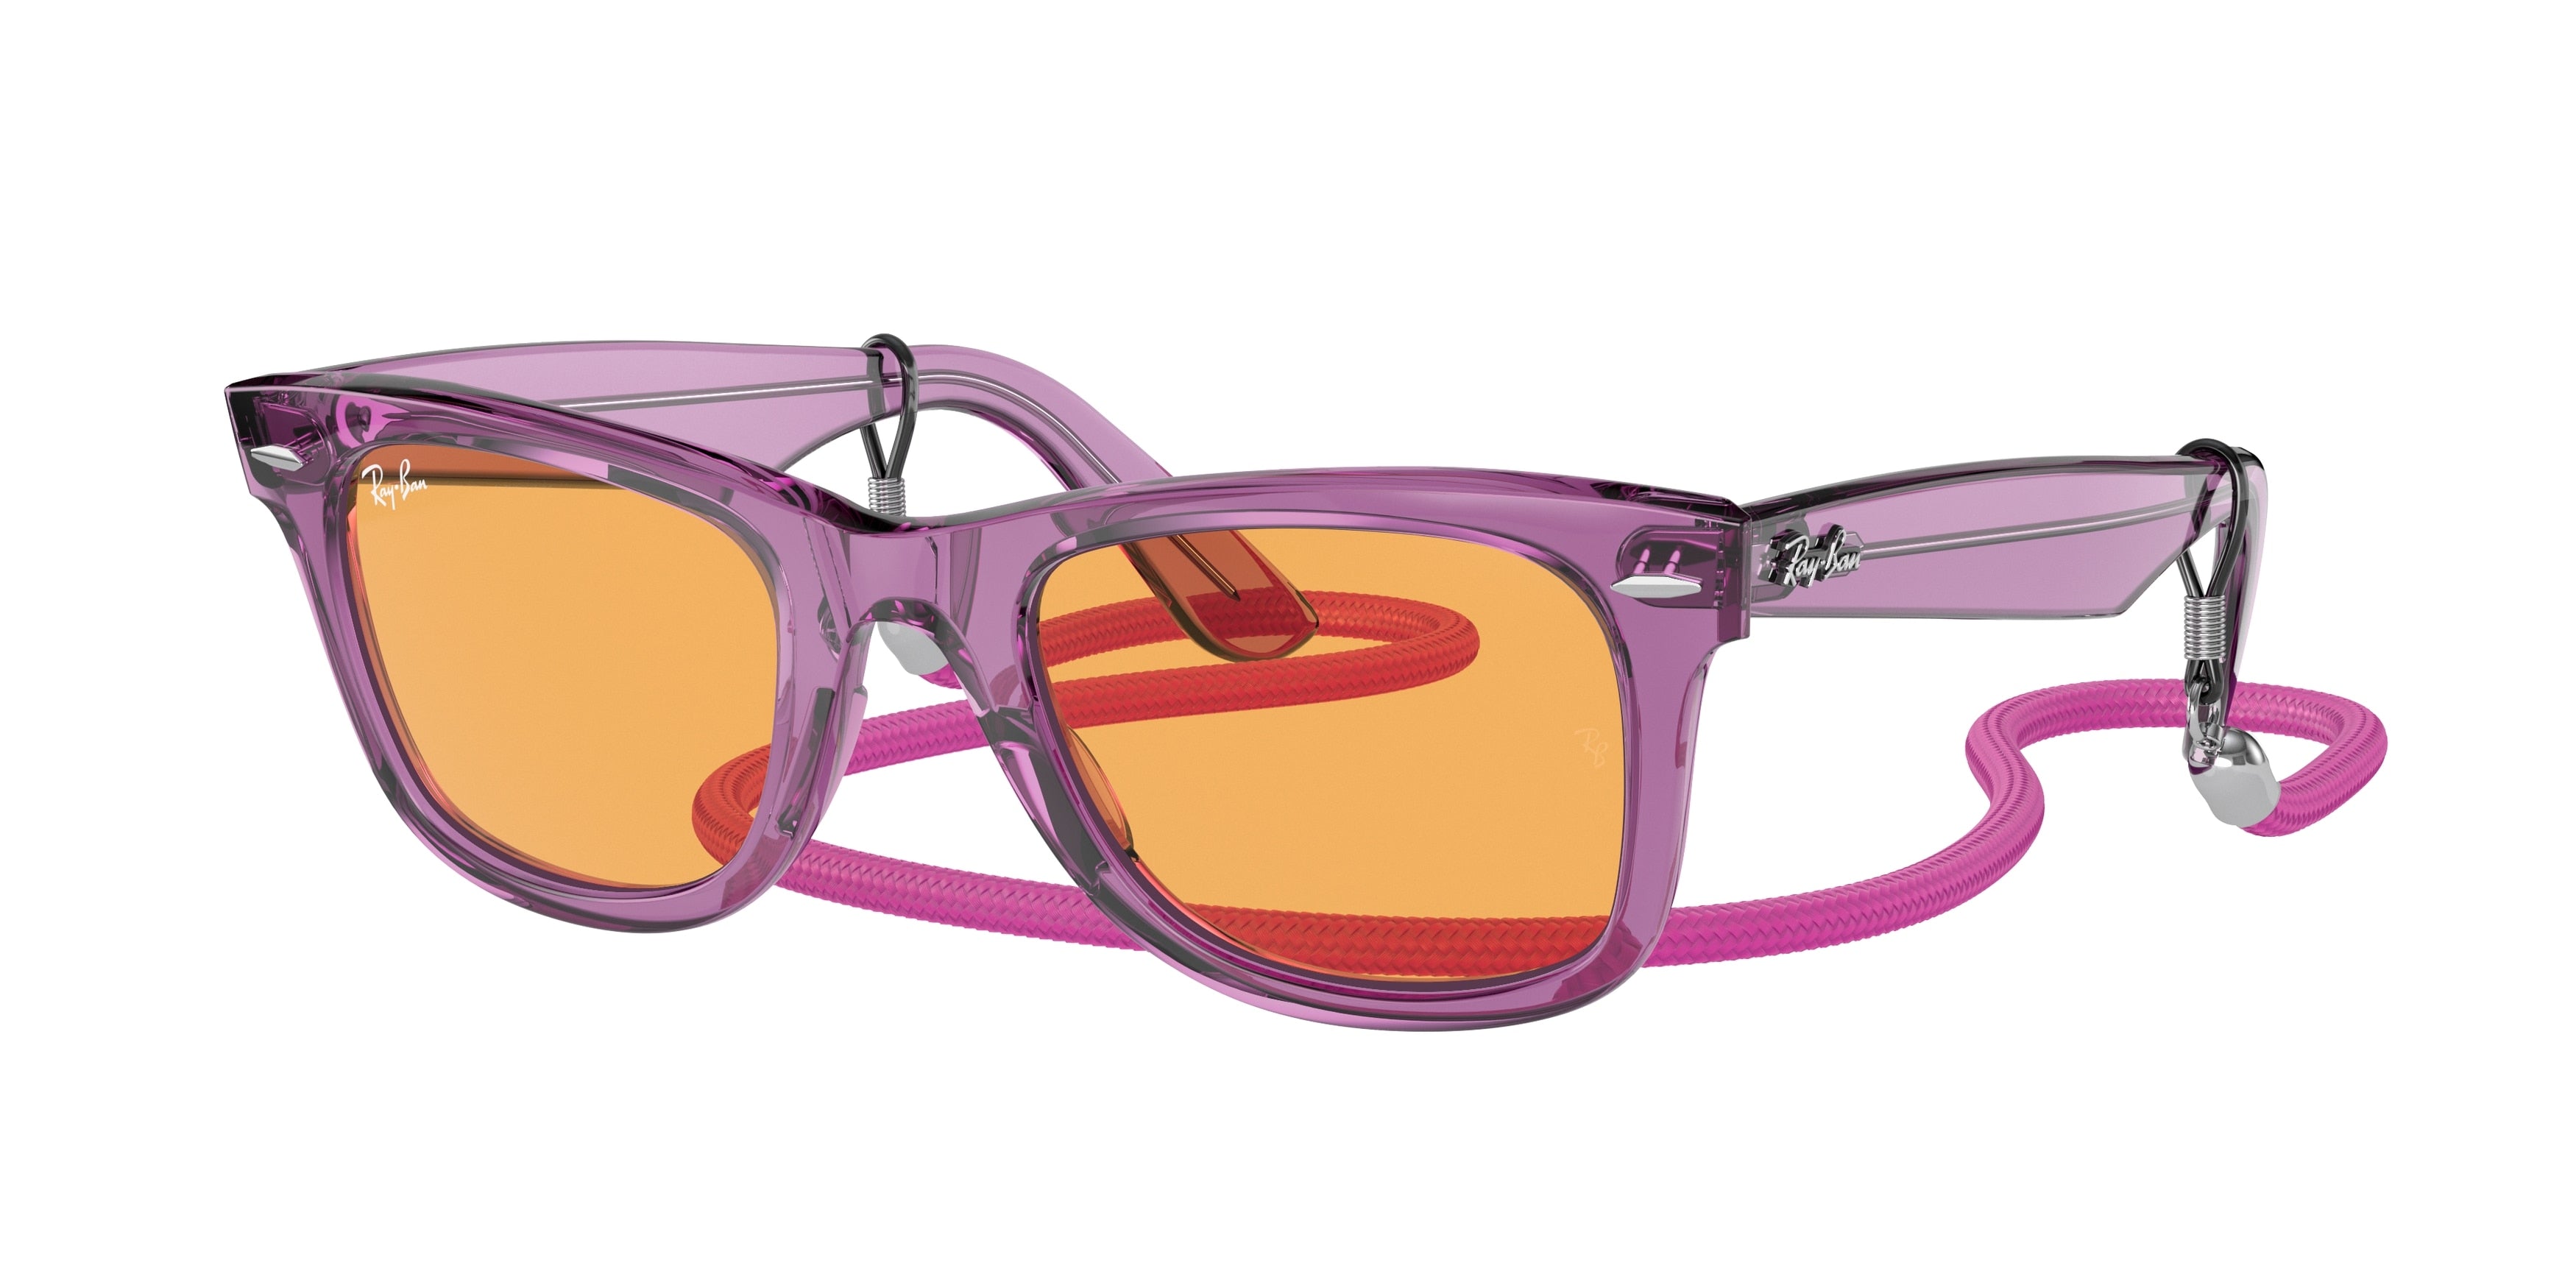 Ray-Ban WAYFARER RB2140 Square Sunglasses  661313-Transparent Violet 50-150-22 - Color Map Violet